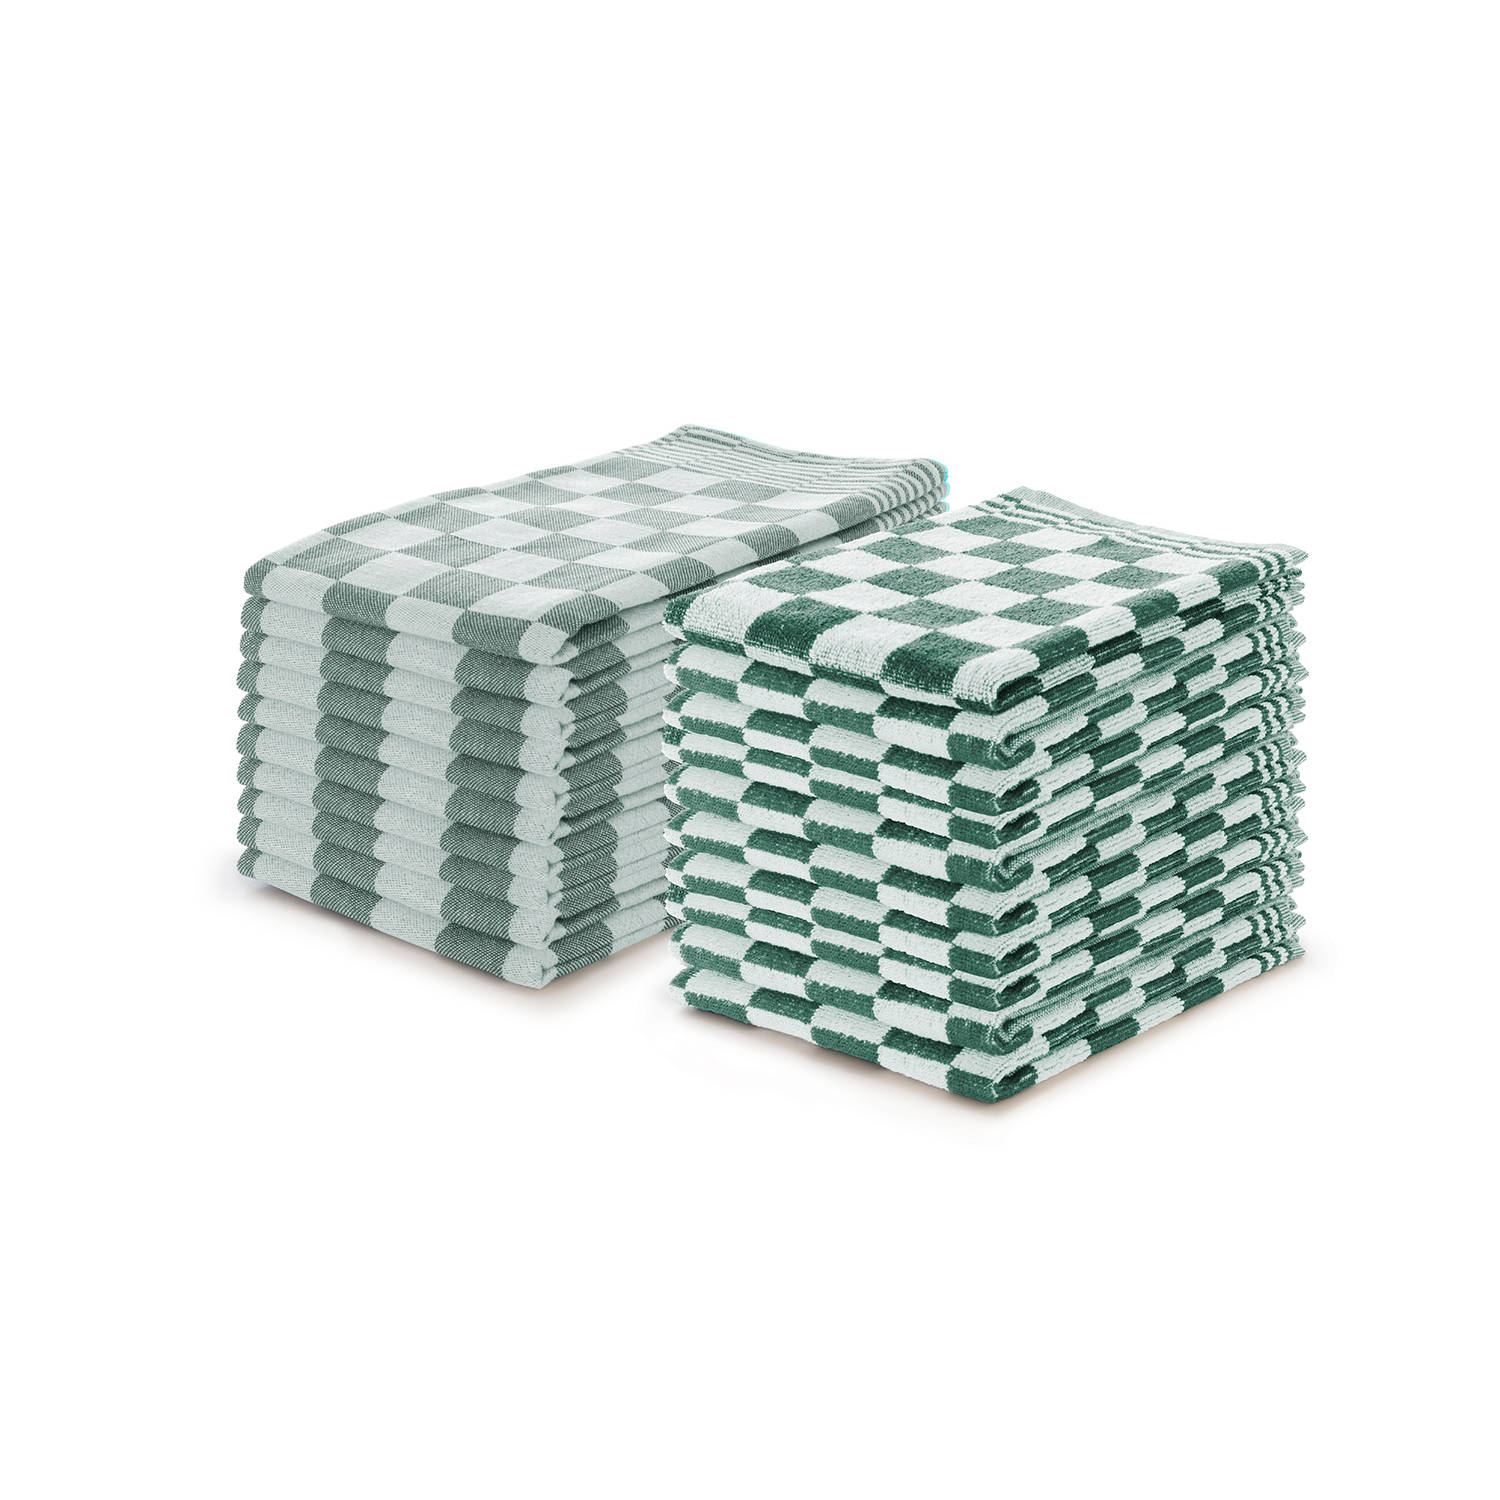 Elegance Theedoeken & Keukendoeken Set Blok - donker groen - set van 20